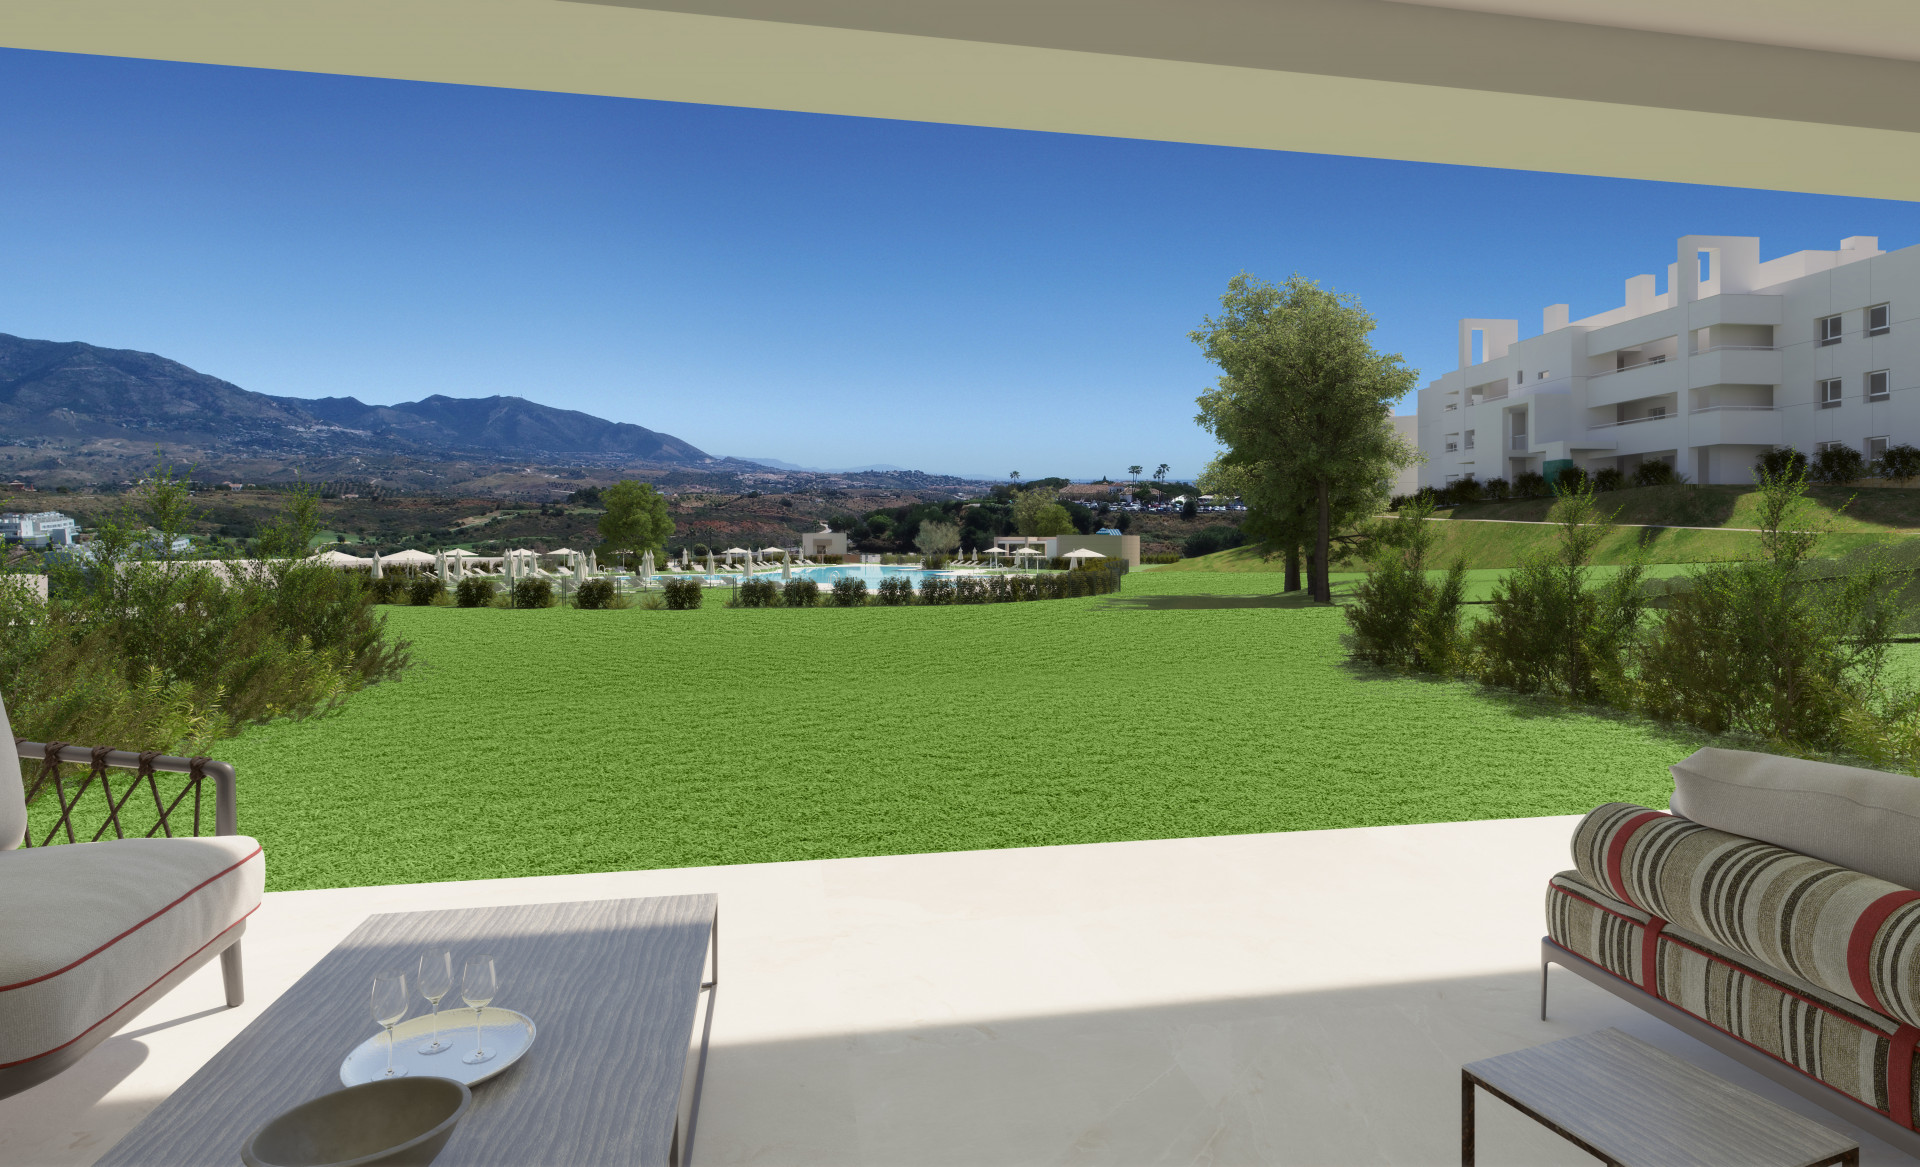 Ground floor apartment with 3 bedrooms in La Cala Golf Resort in Mijas | Image 8